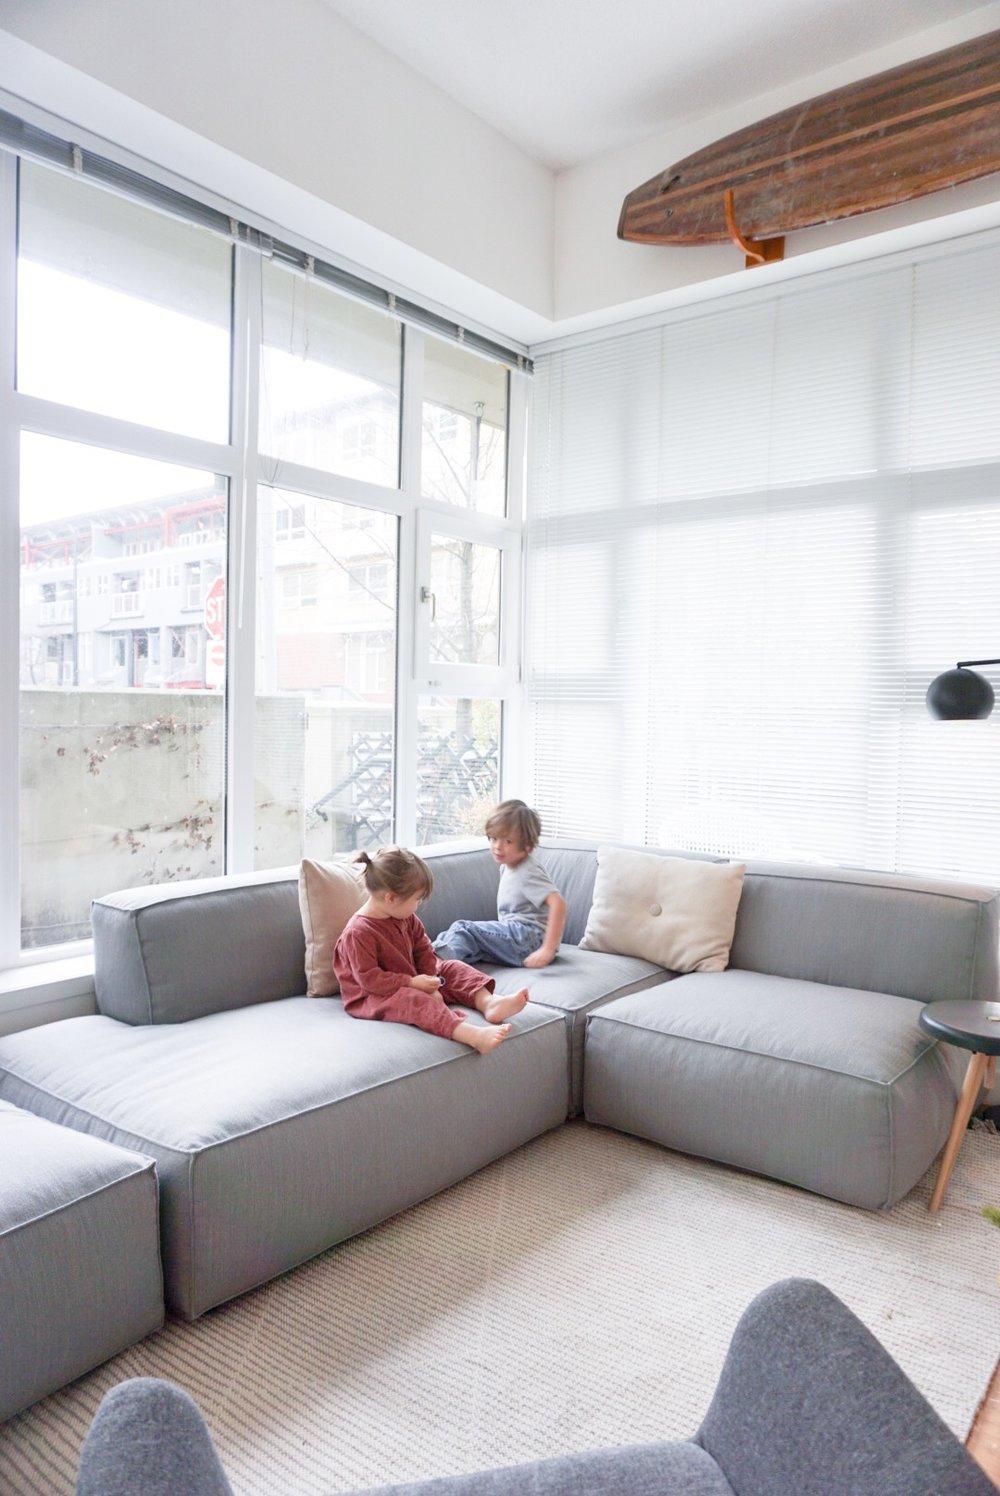 Ghế sofa modular phù hợp với không gian nhỏ của chúng tôi. Với thiết kế nhỏ gọn và đa dạng, ghế sofa modular sẽ giúp bạn tạo ra một không gian sống tuyệt vời trong ngôi nhà của mình. Với nhiều màu sắc và kiểu dáng khác nhau, bạn hoàn toàn có thể lựa chọn cho mình một chiếc ghế sofa phù hợp với phong cách và sở thích của mình.